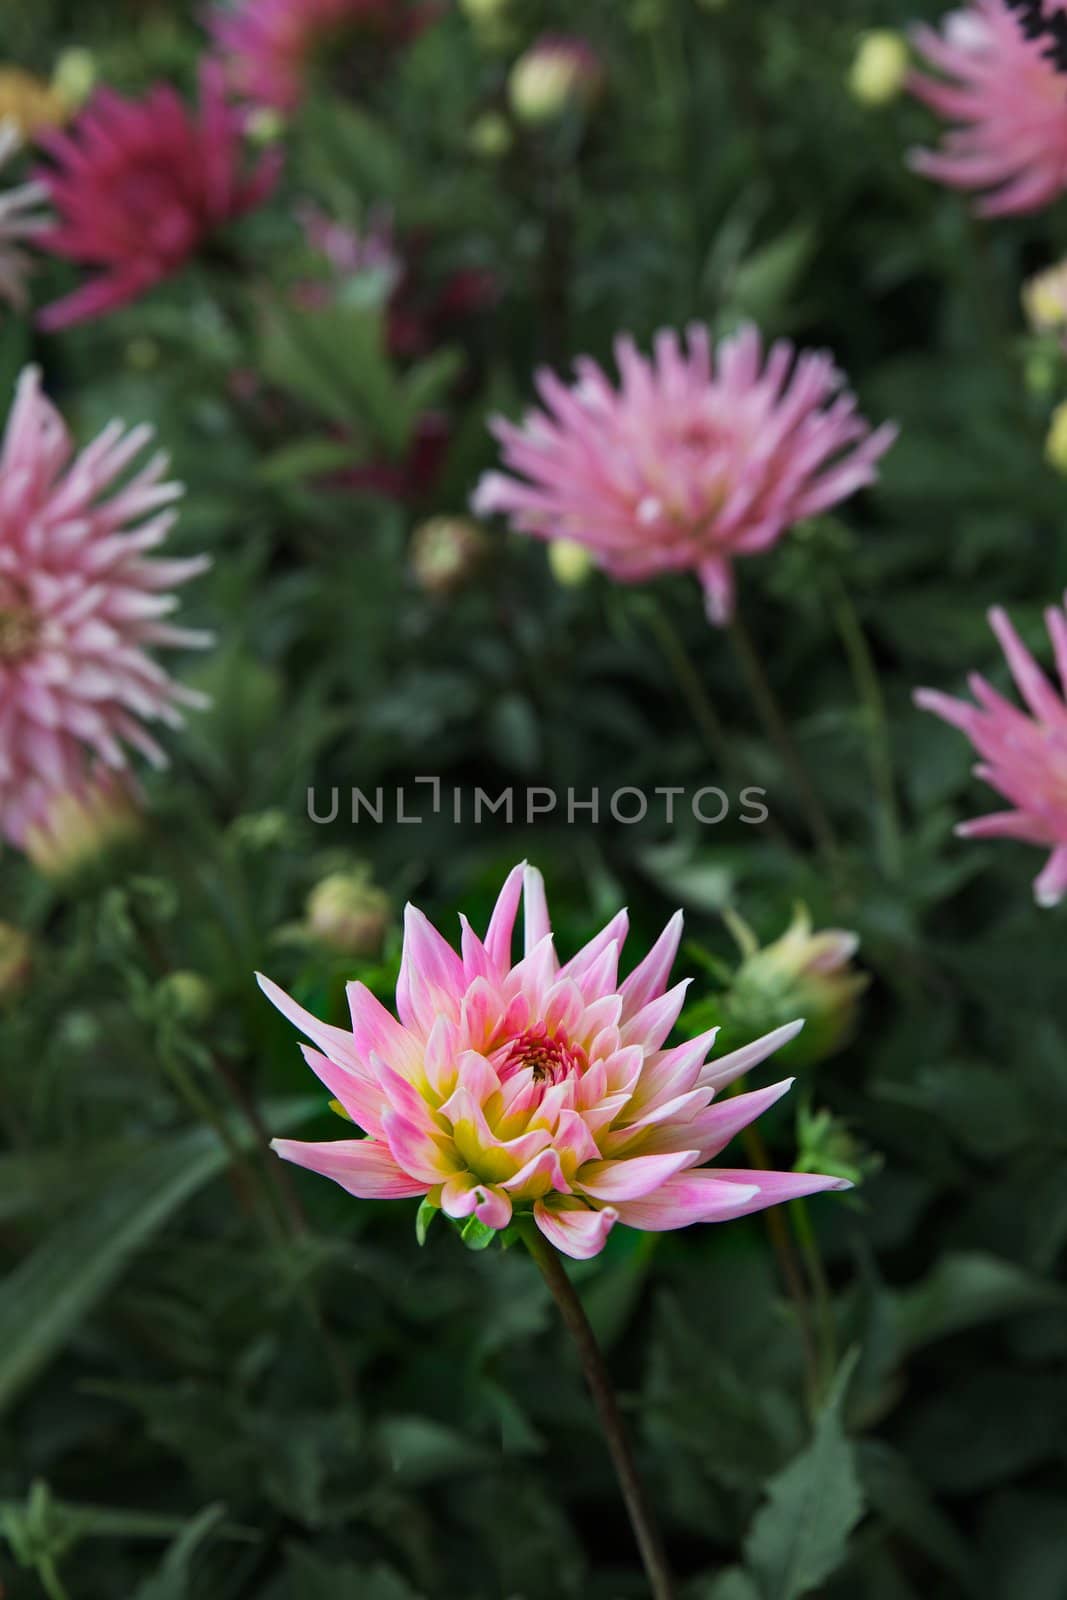  Pink chrysanthemum by bobkeenan